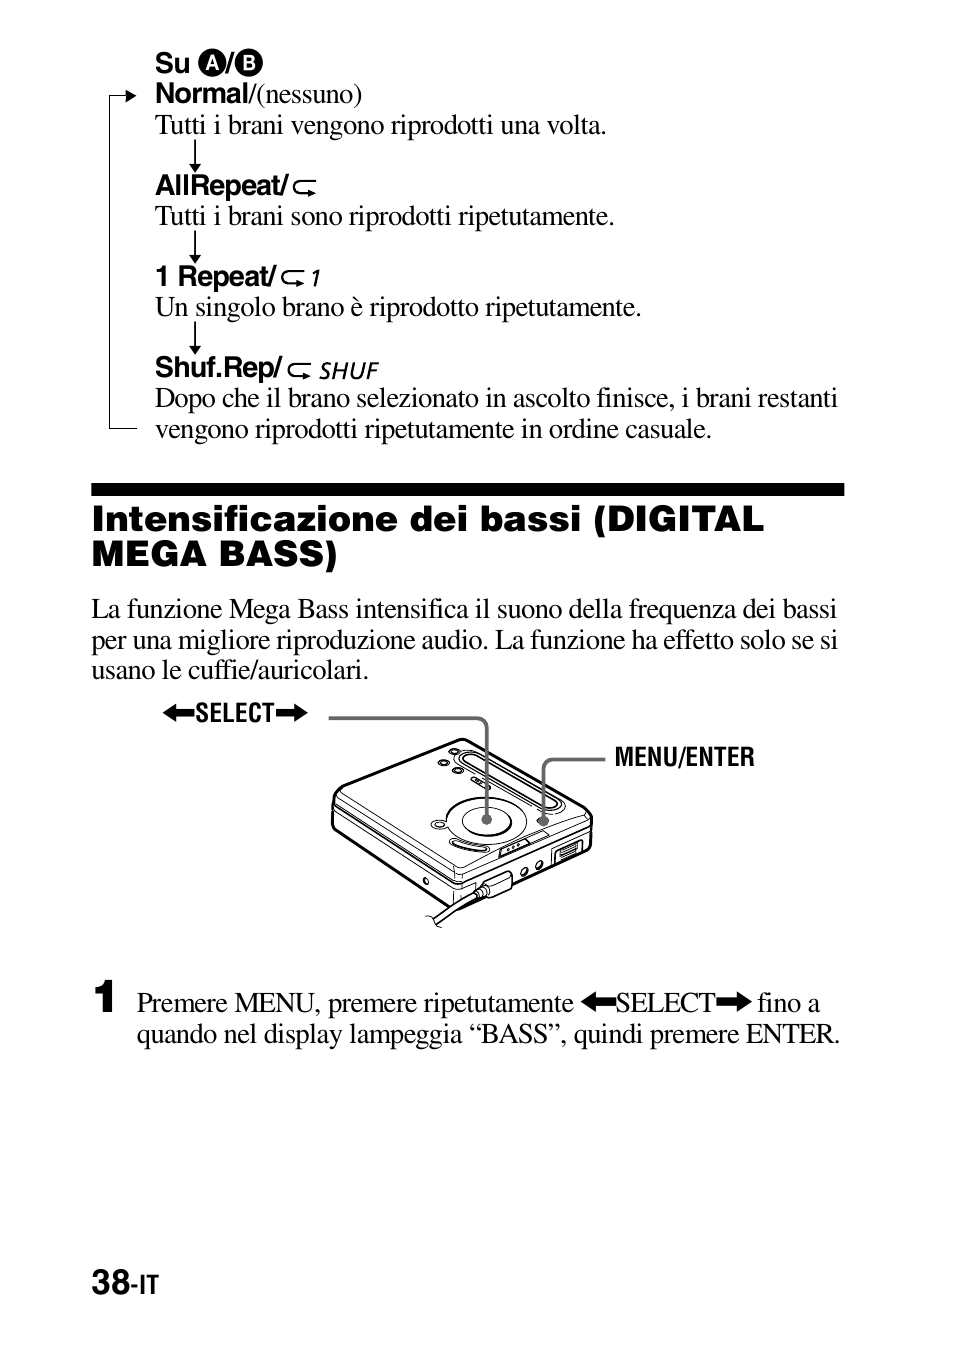 Intensificazione dei bassi (digital mega bass) | Sony MZ-G755 Benutzerhandbuch | Seite 190 / 228